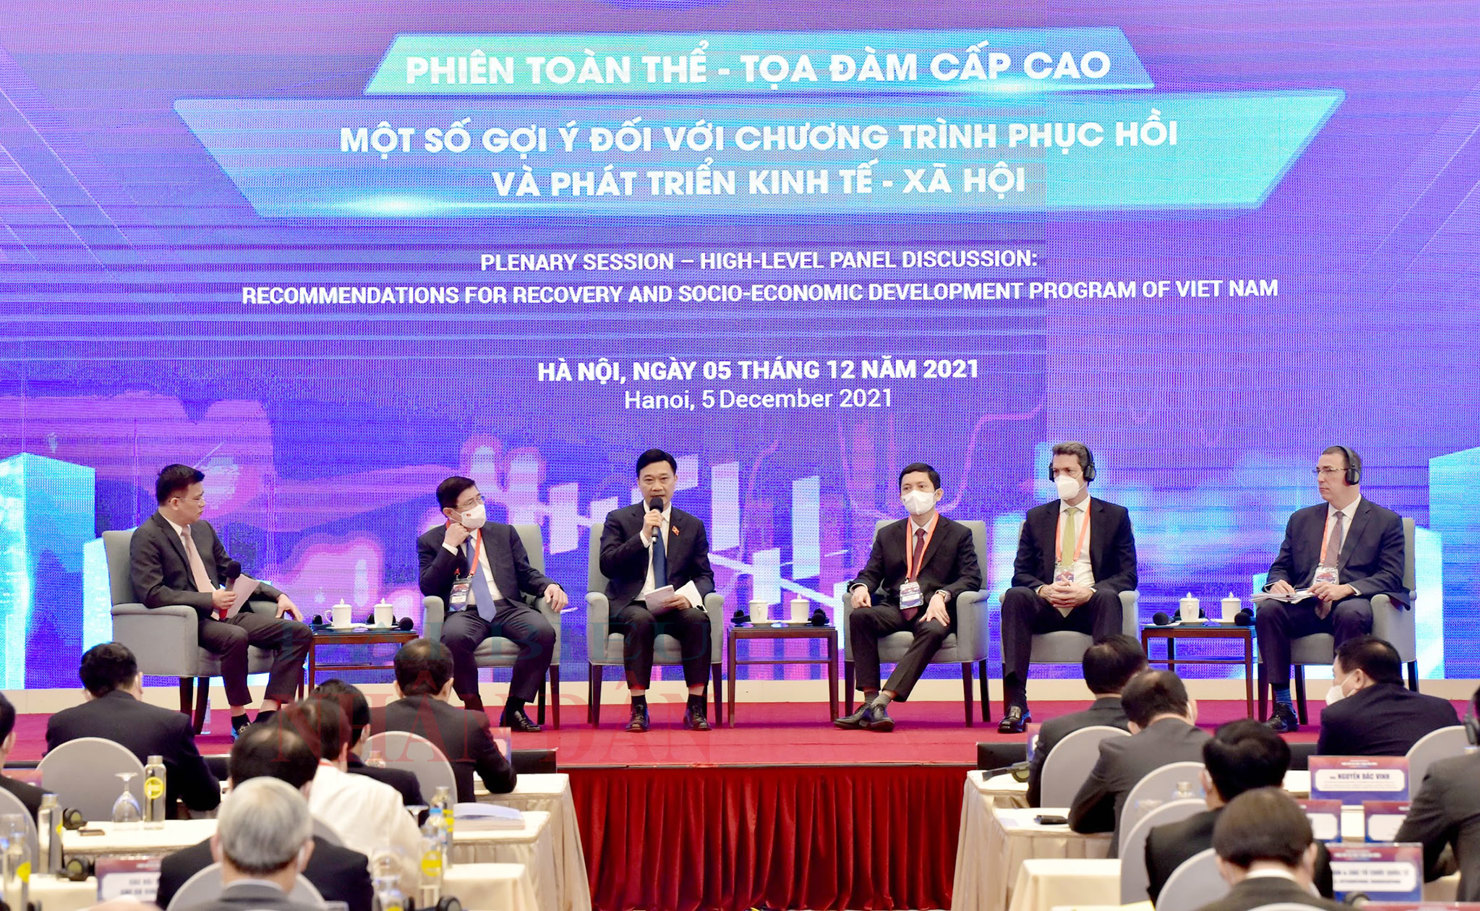 Quang cảnh phiên Tọa đàm cấp cao với chủ đề “Một số gợi ý đối với Chương trình phục hồi và phát triển kinh tế - xã hội Việt Nam”.